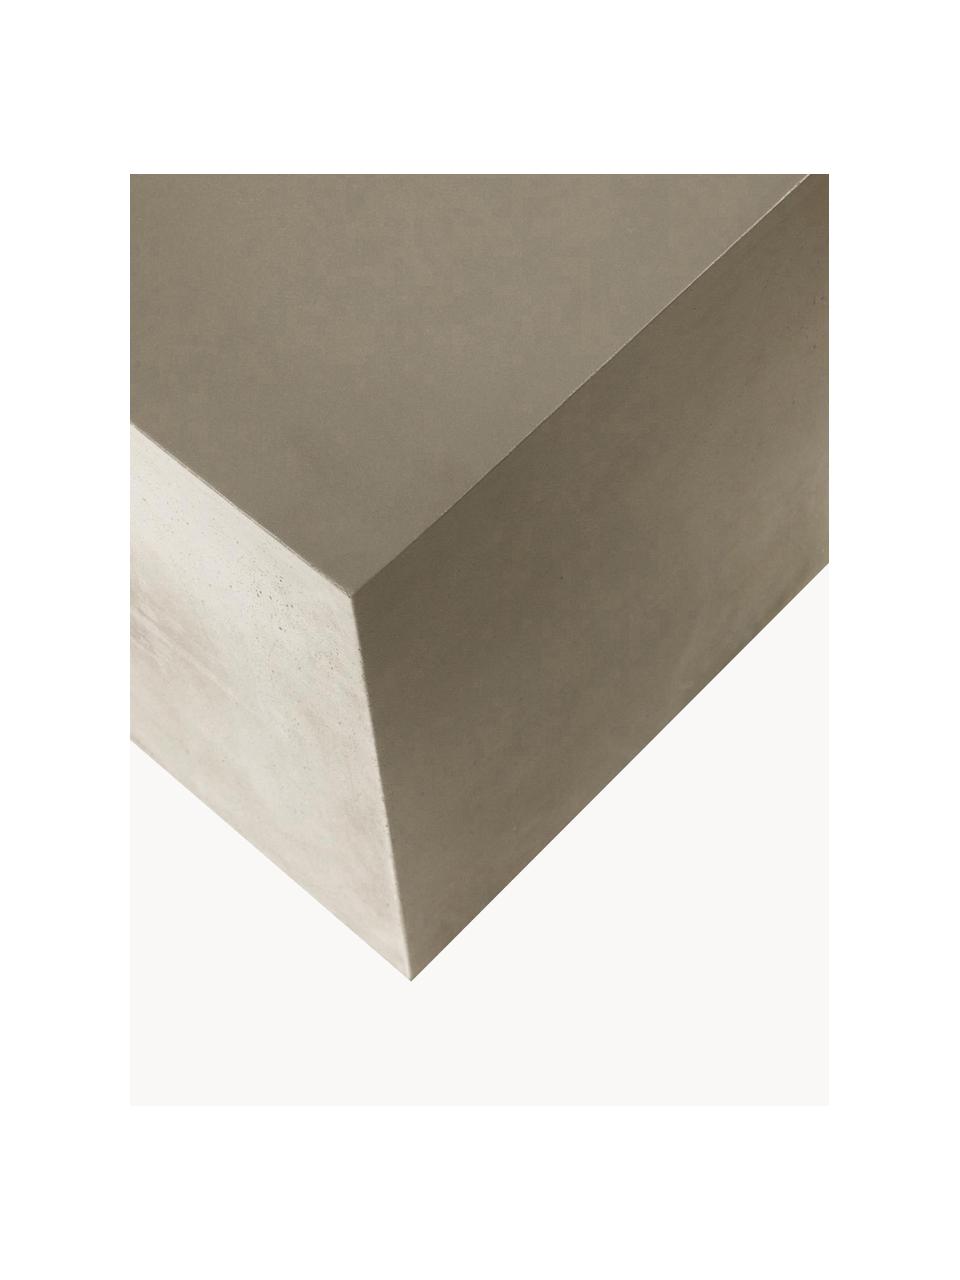 Table d'appoint Rustella, 100 % fibre de ciment, Grège, larg. 35 x haut. 46 cm